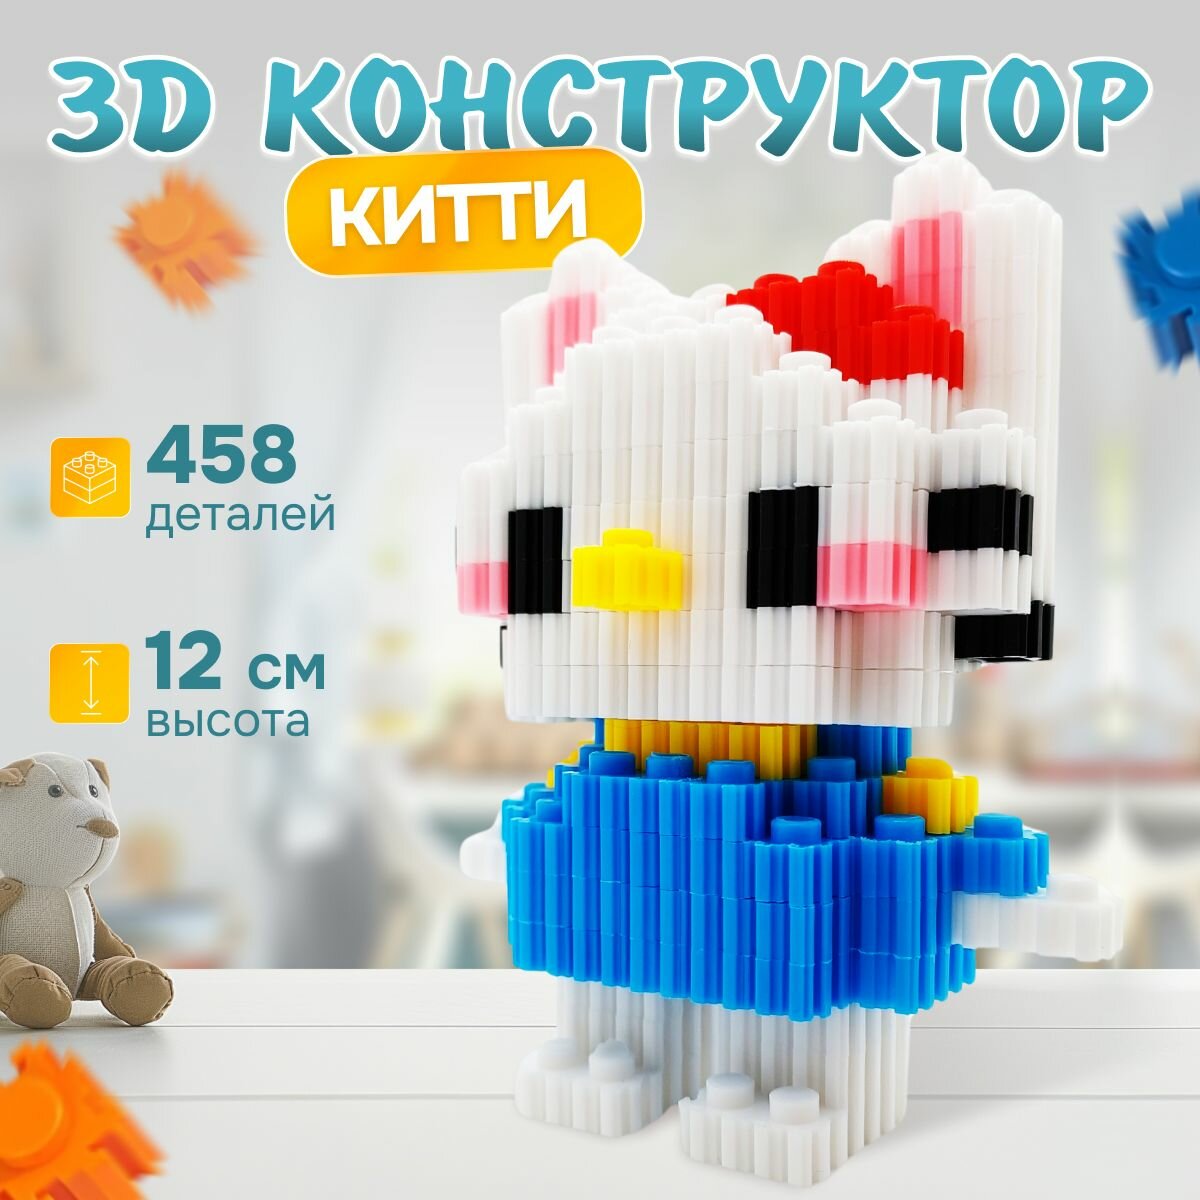 3д конструктор Hello Kitty , 458 миниблоков, сборная модель, головоломка IQ для развития мелкой моторики и логики, развивающая 3D игрушка для детей и взрослых